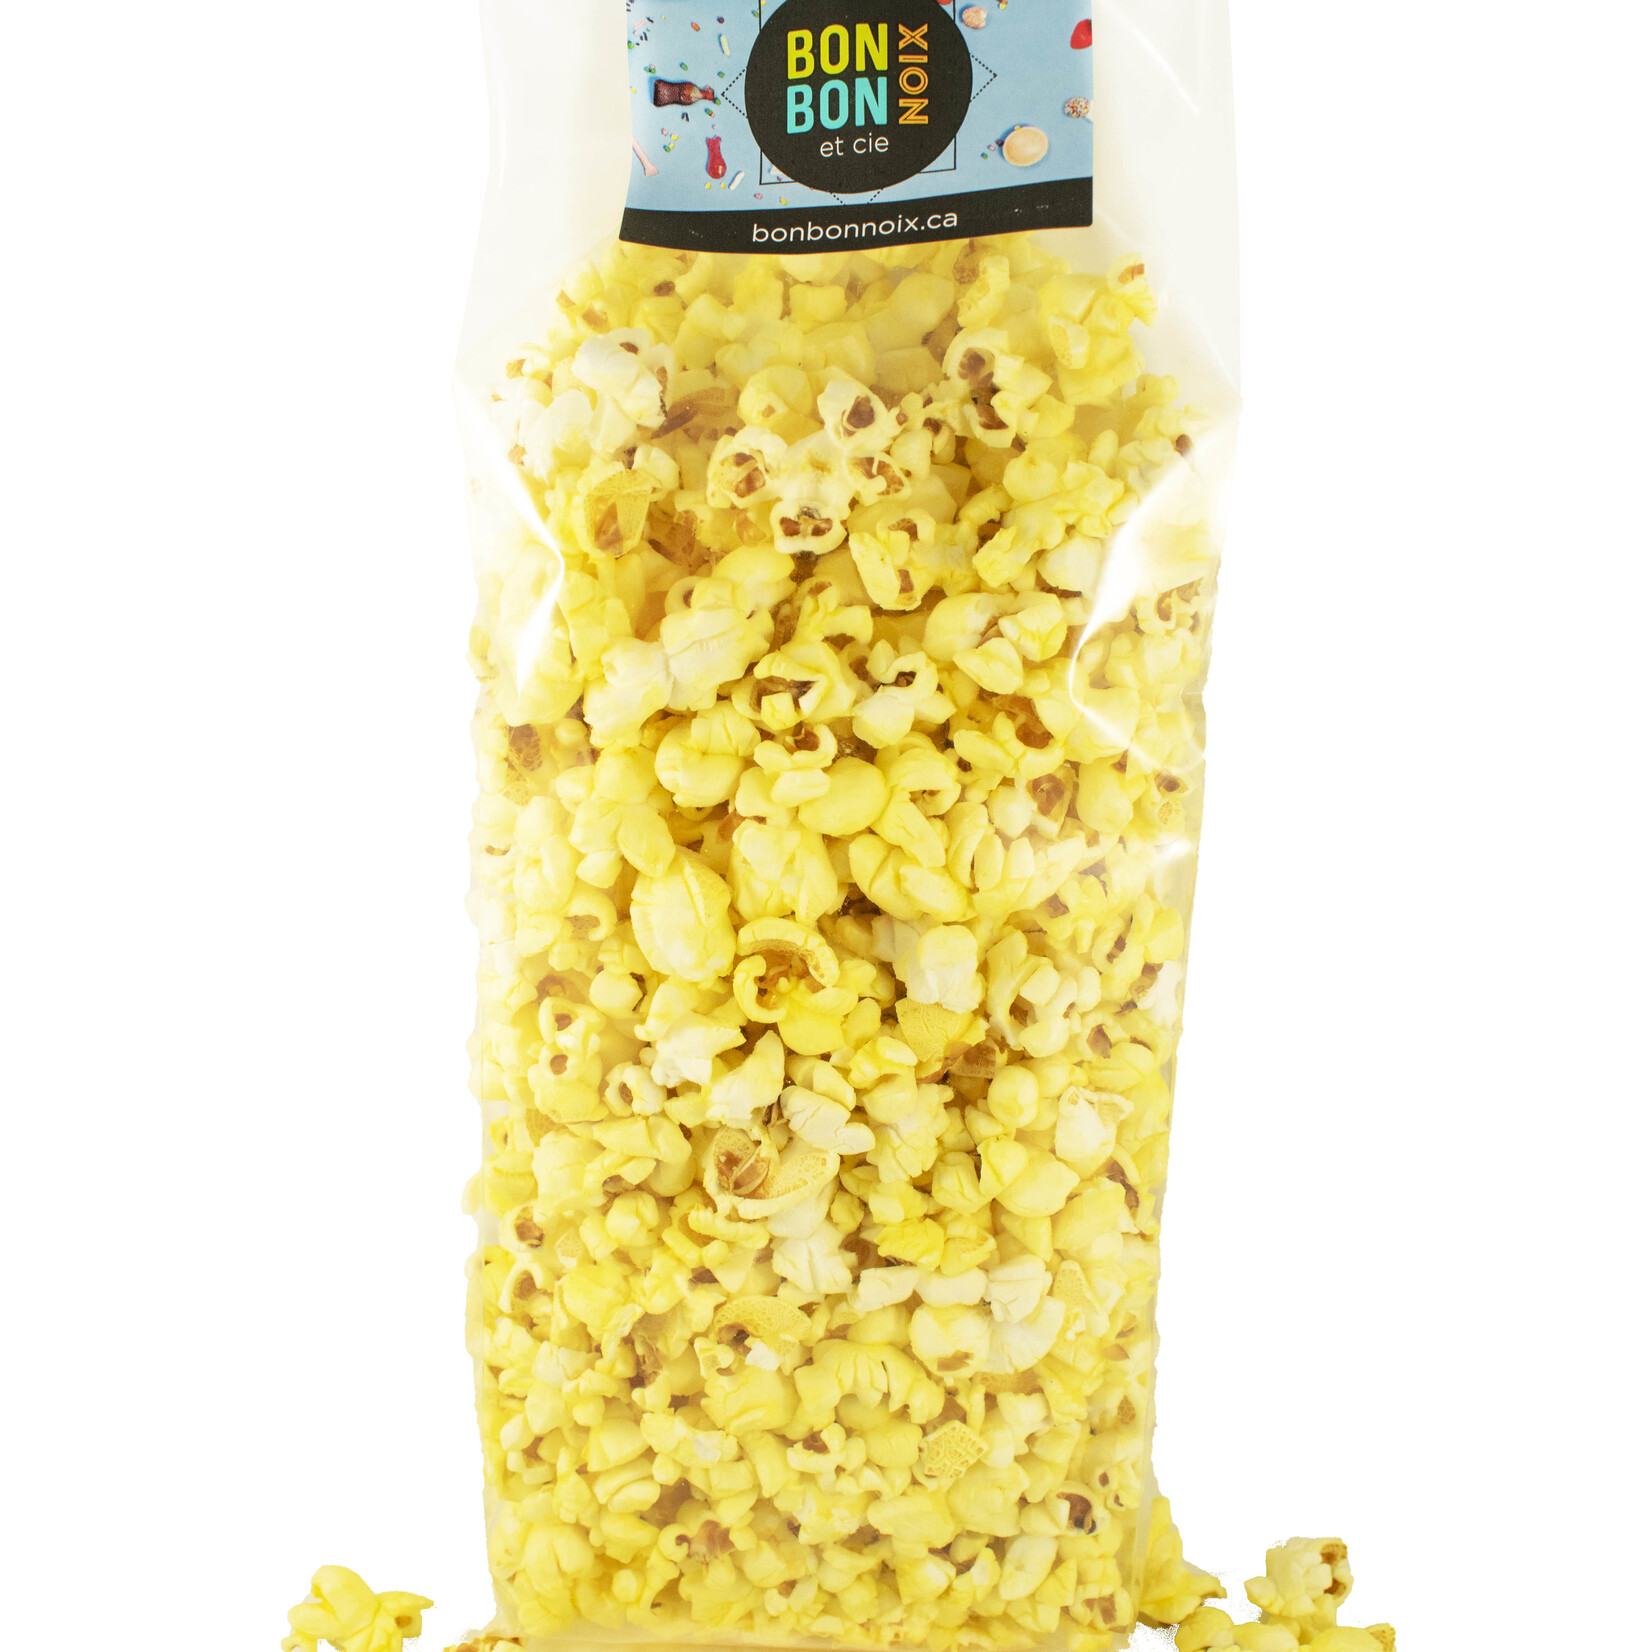 Poff Korn Cinema Popcorn